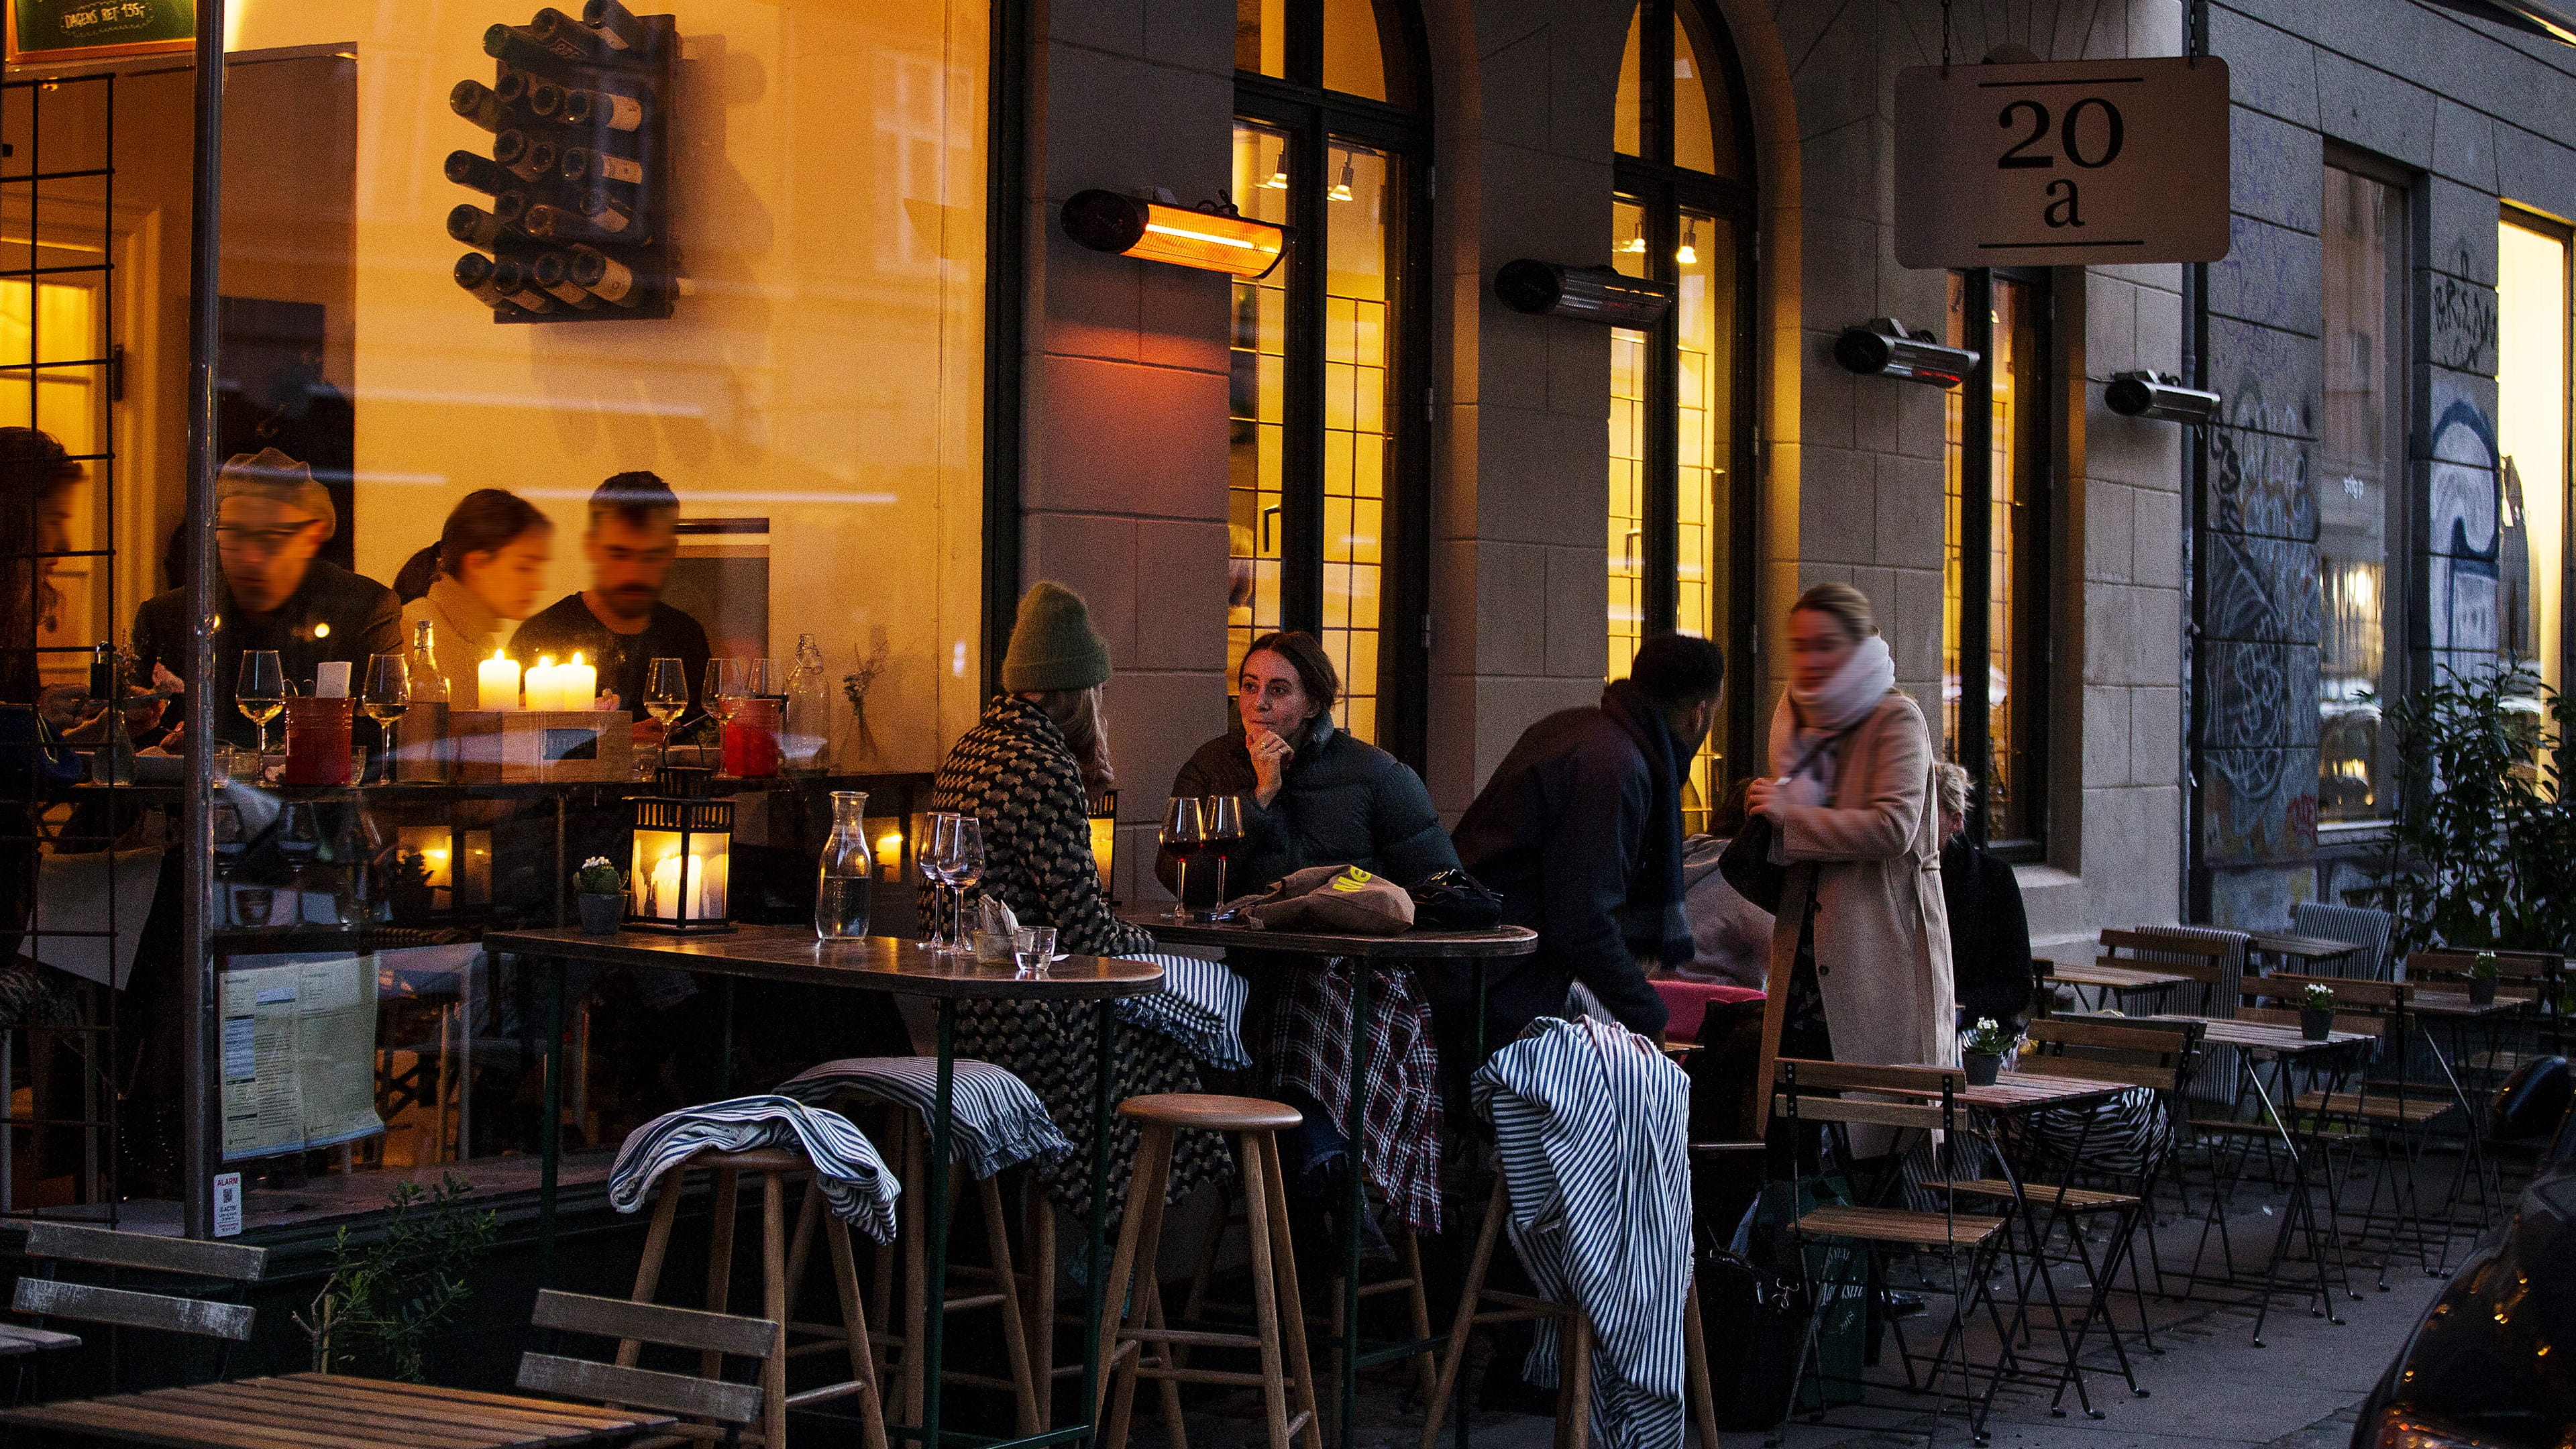 Folk der sidder udenfor en restaurant på Nørrebro | Photo by: Maria Sattrup | Source: VisitCopenhagen